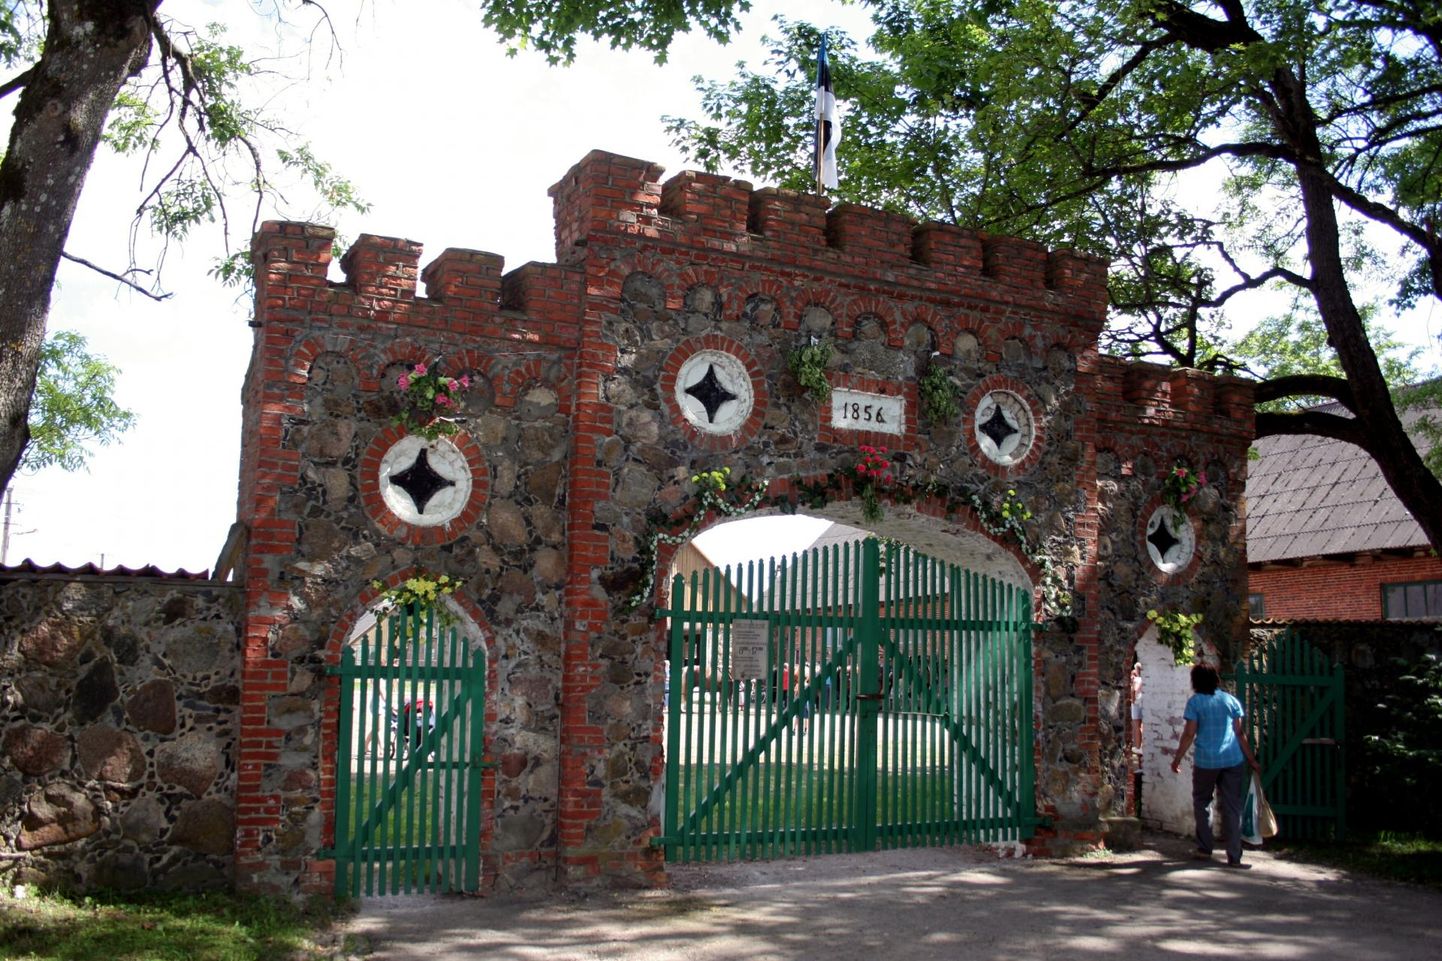 Tori hobusekasvanduse ajalooline väravakompleks. Pilt on üles võetud ­kasvanduse 150. aastapäeval.